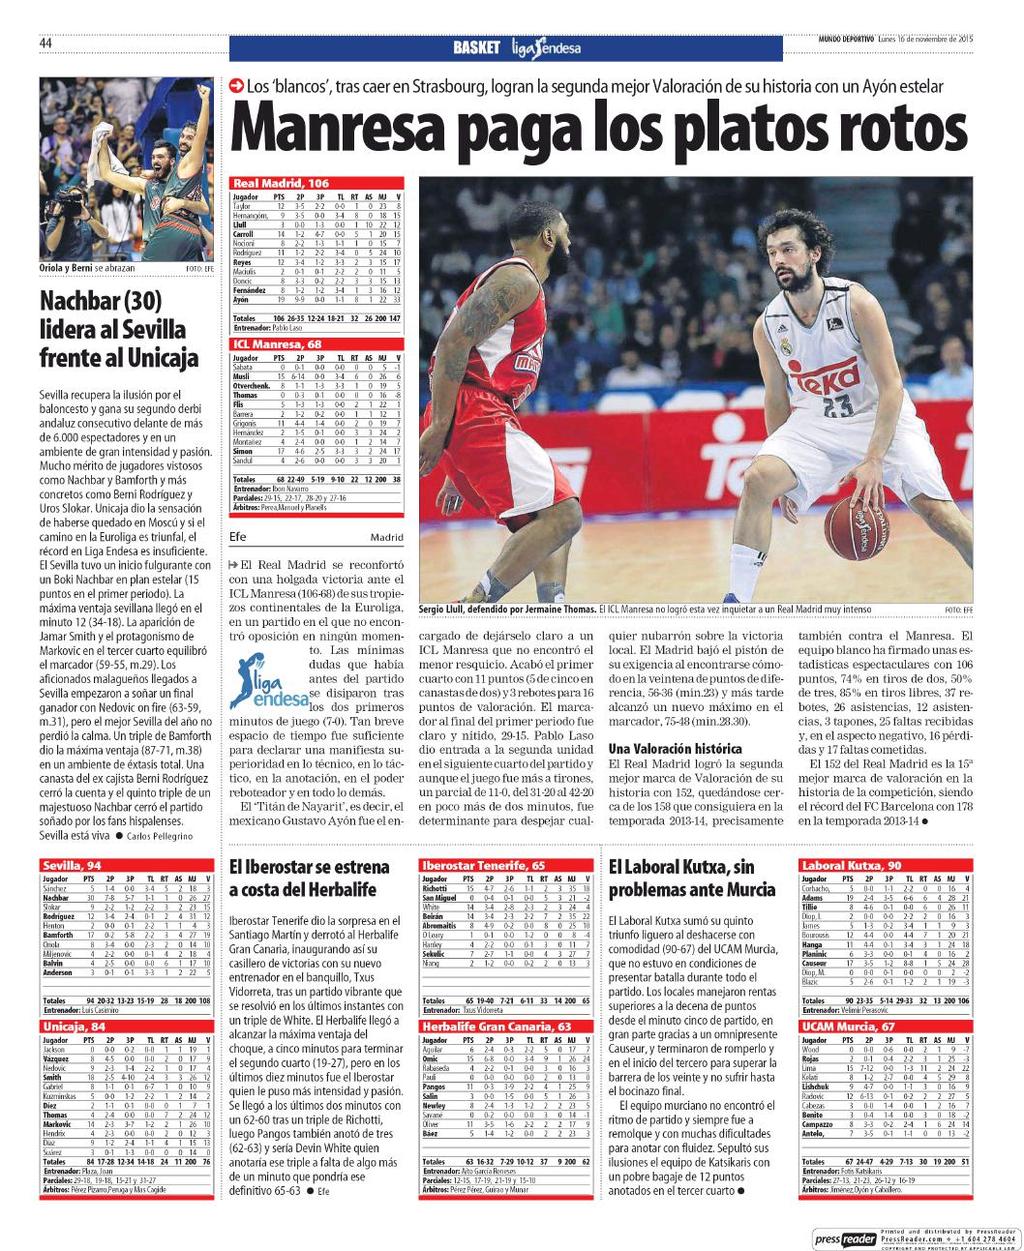 16/11/2015 Kiosko y Más Mundo Deportivo 16 nov. 2015 Page #44 http://lector.kioskoymas.